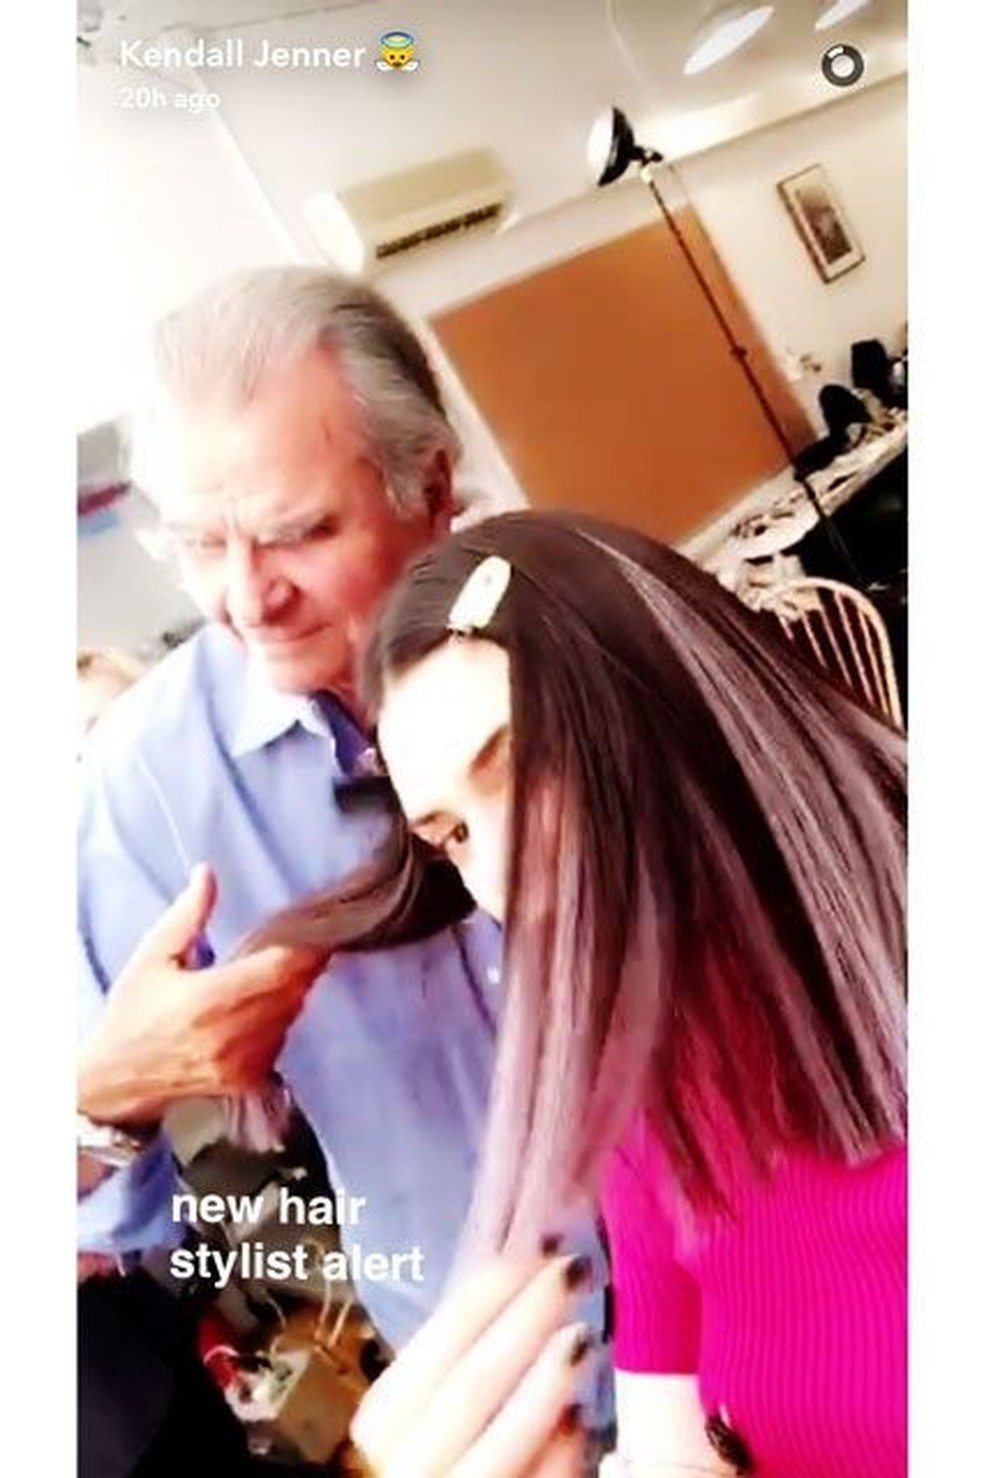 Novo visual? Kendall Jenner surge com mechas roxas no cabelo (Foto: Reprodução/Snapchat) — Foto: Vogue